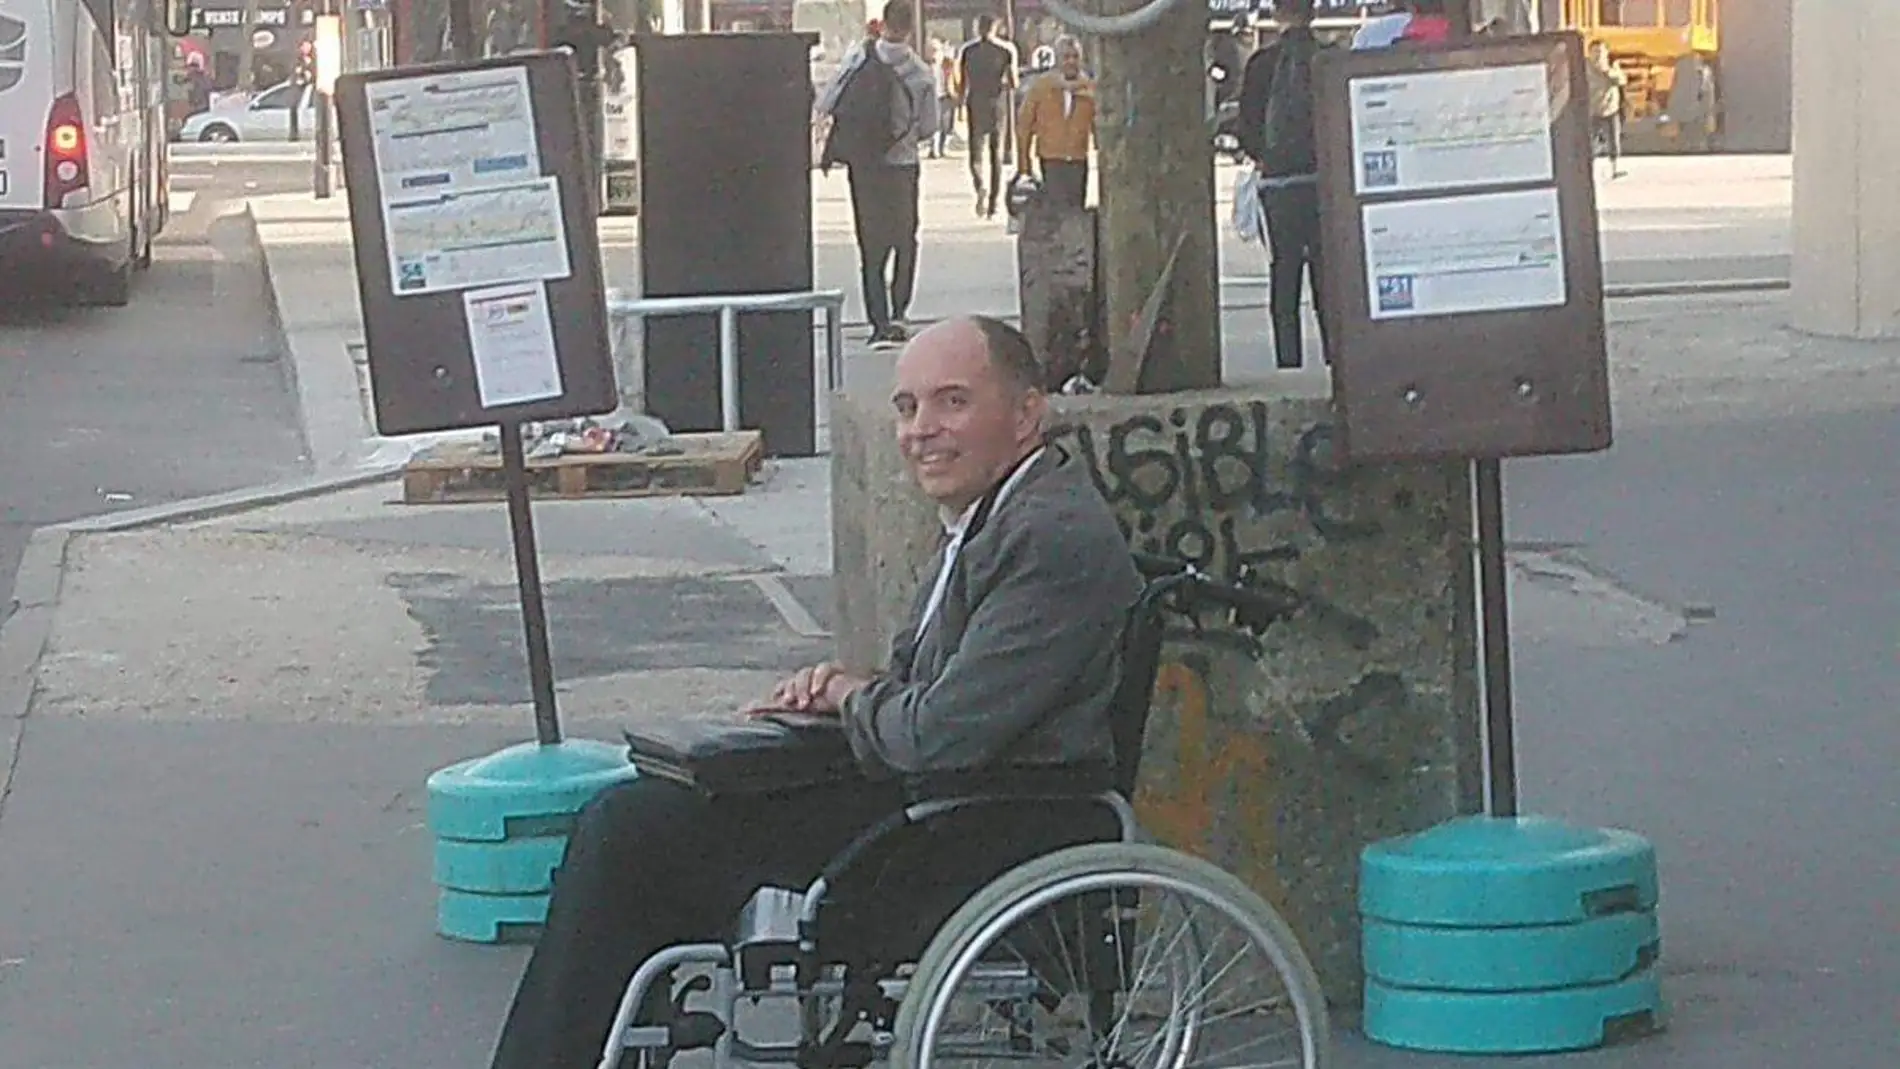 El hombre al que nadie ayudó a subir a un autobús en París